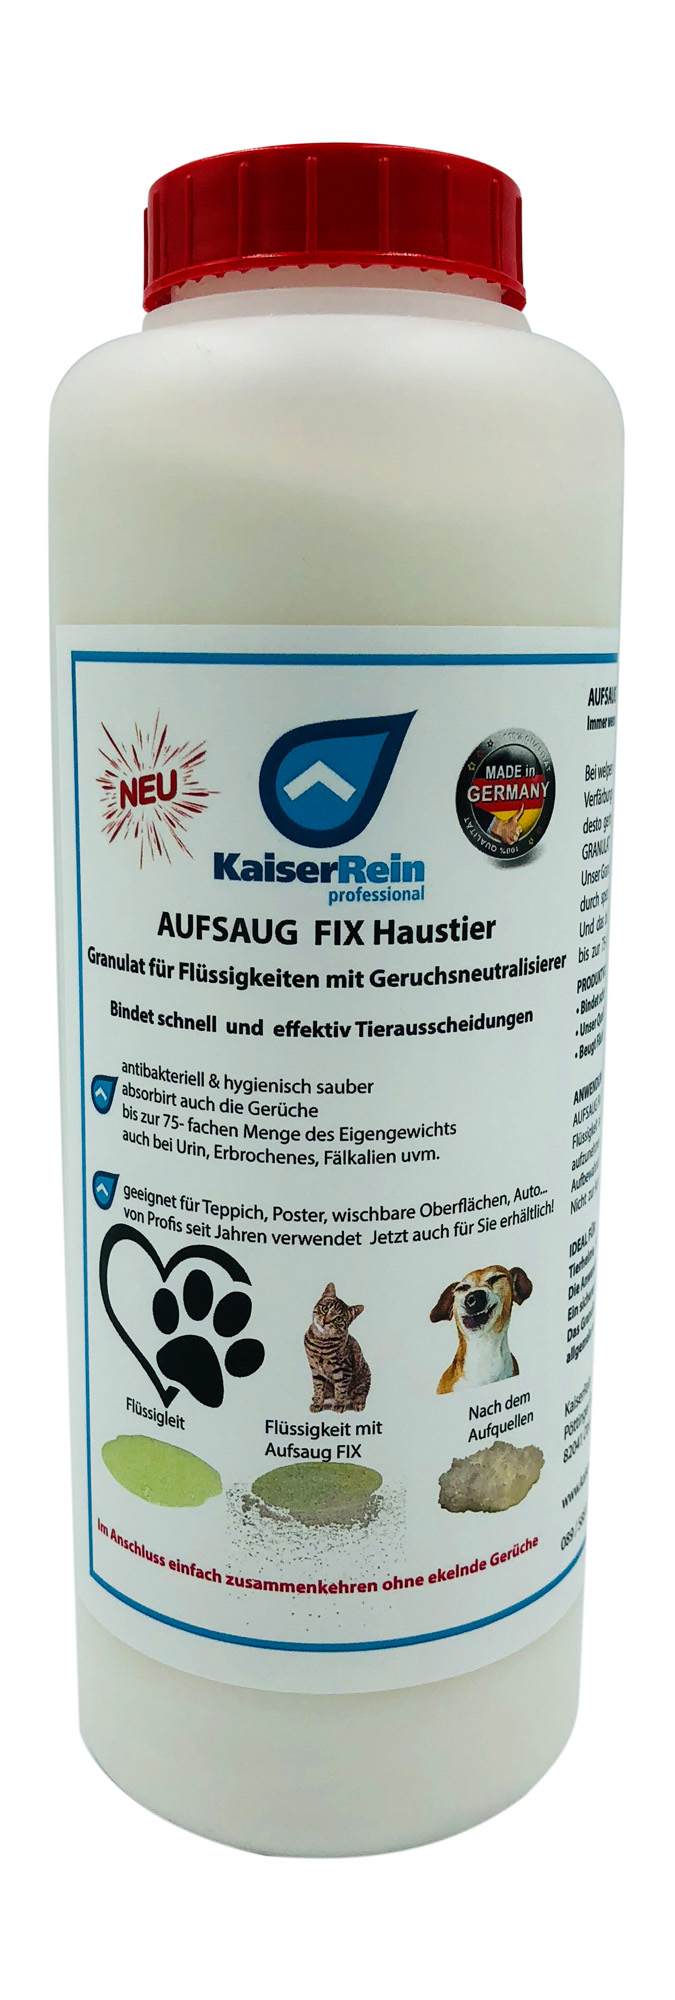 AUFSAUG FIX Granulat für Flüssigkeiten mit Geruchsneutralisierer Haustier